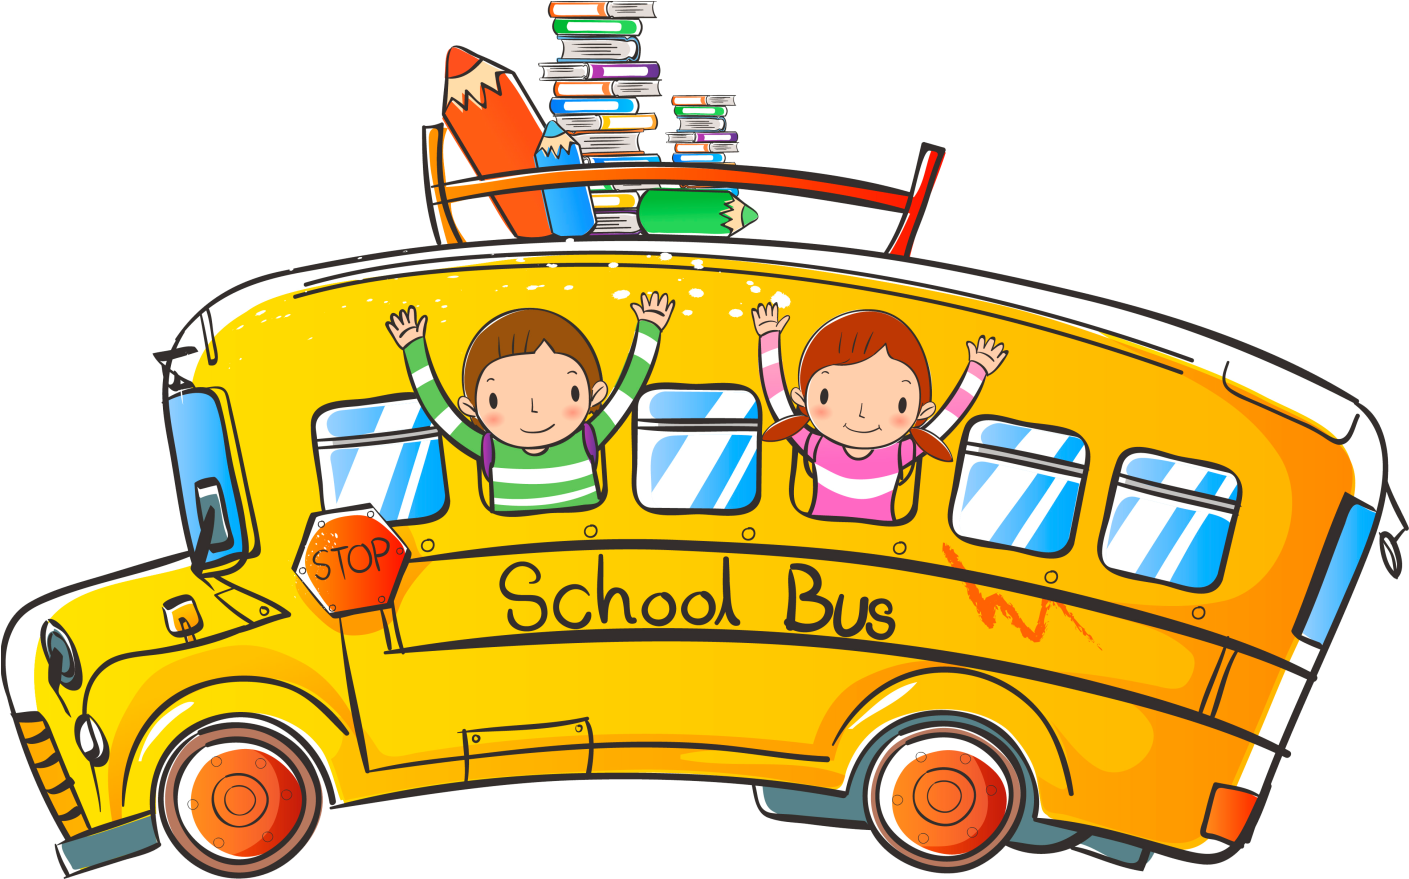 Детский автобус для детей. Автобус картинка для детей. Школьный автобус. Дети в автобусе путешествие. Школьный автобус на прозрачном фоне.